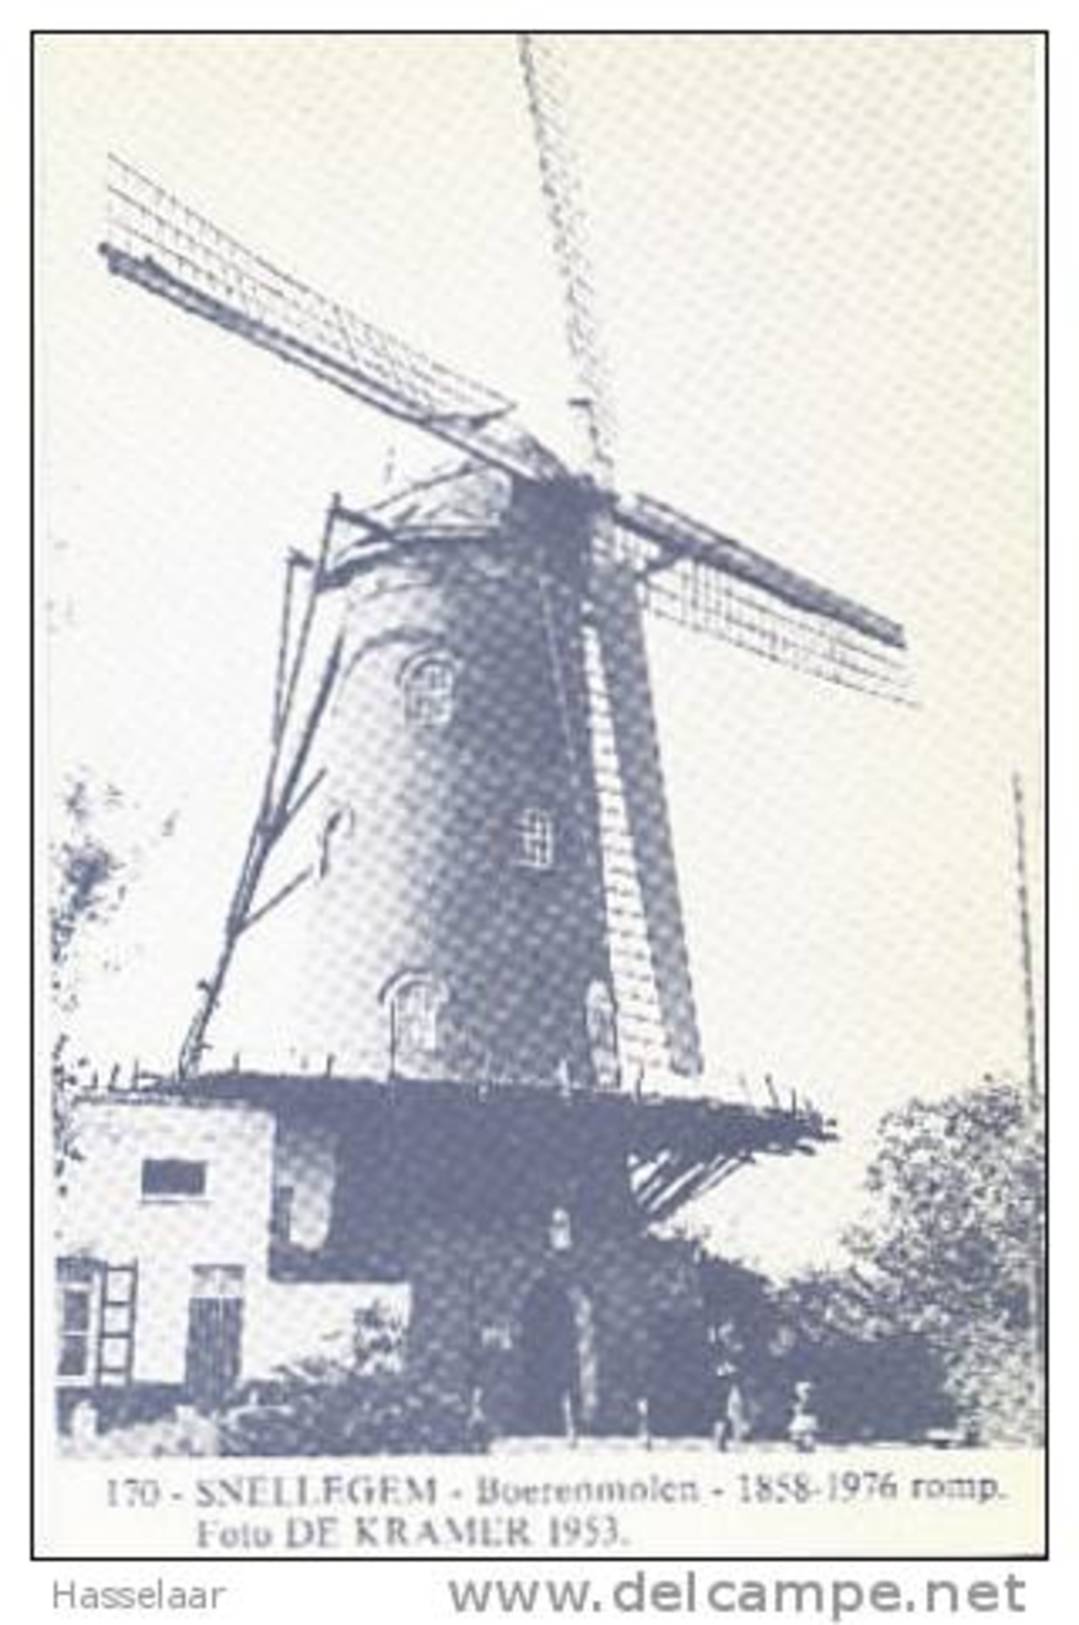 Snellegem - Boerenmolen - 1858-1976 Romp - Jabbeke